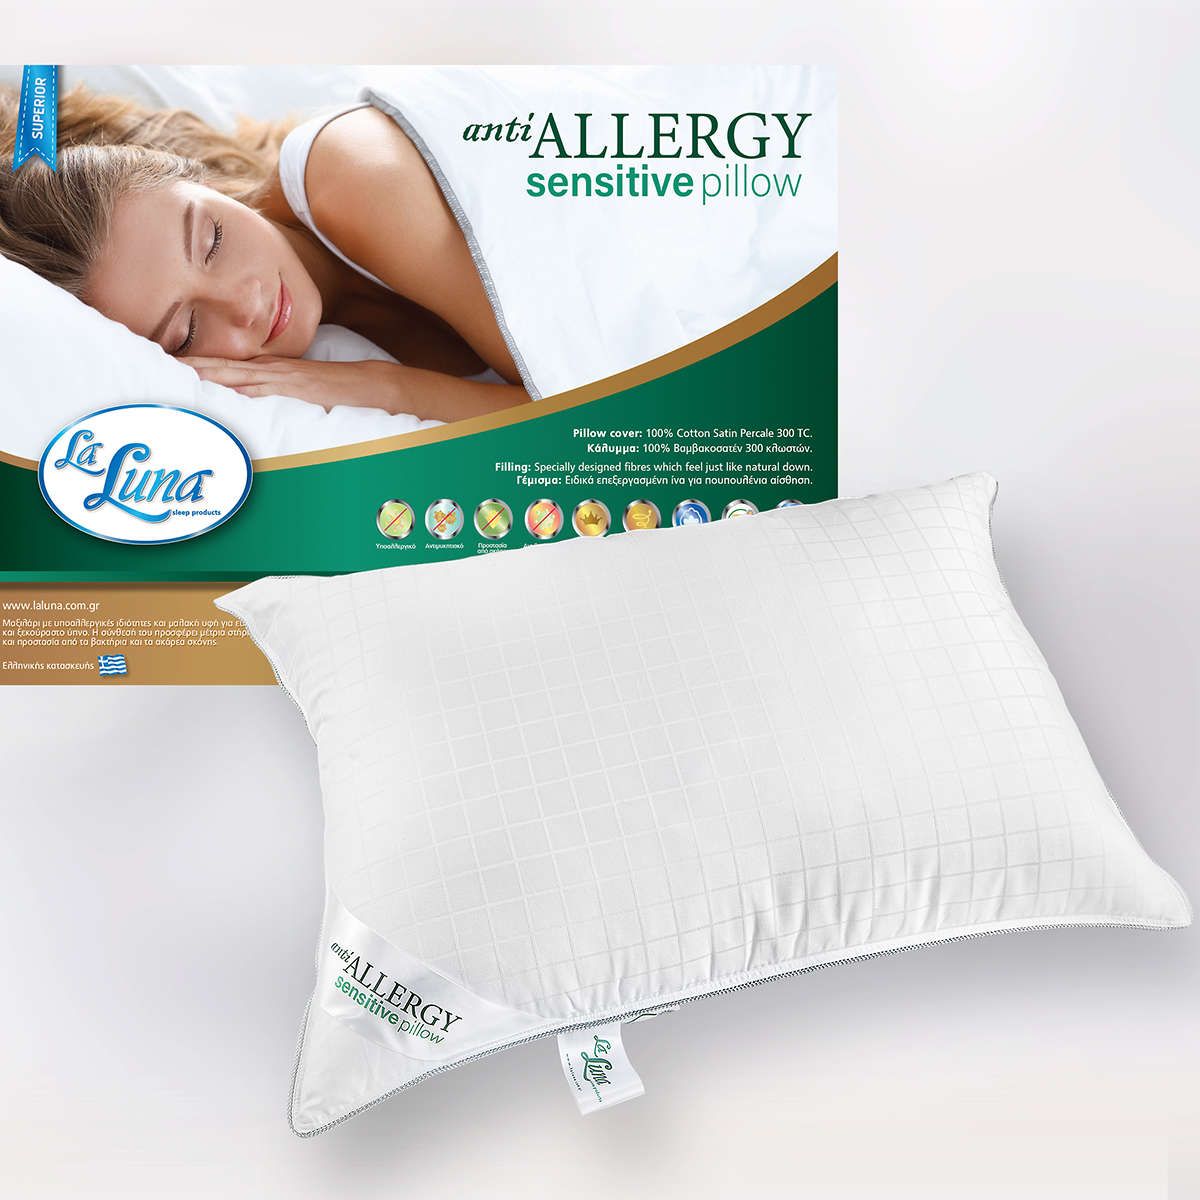 Μαξιλάρι ύπνου Anti-Allergy Sensitive medium la luna